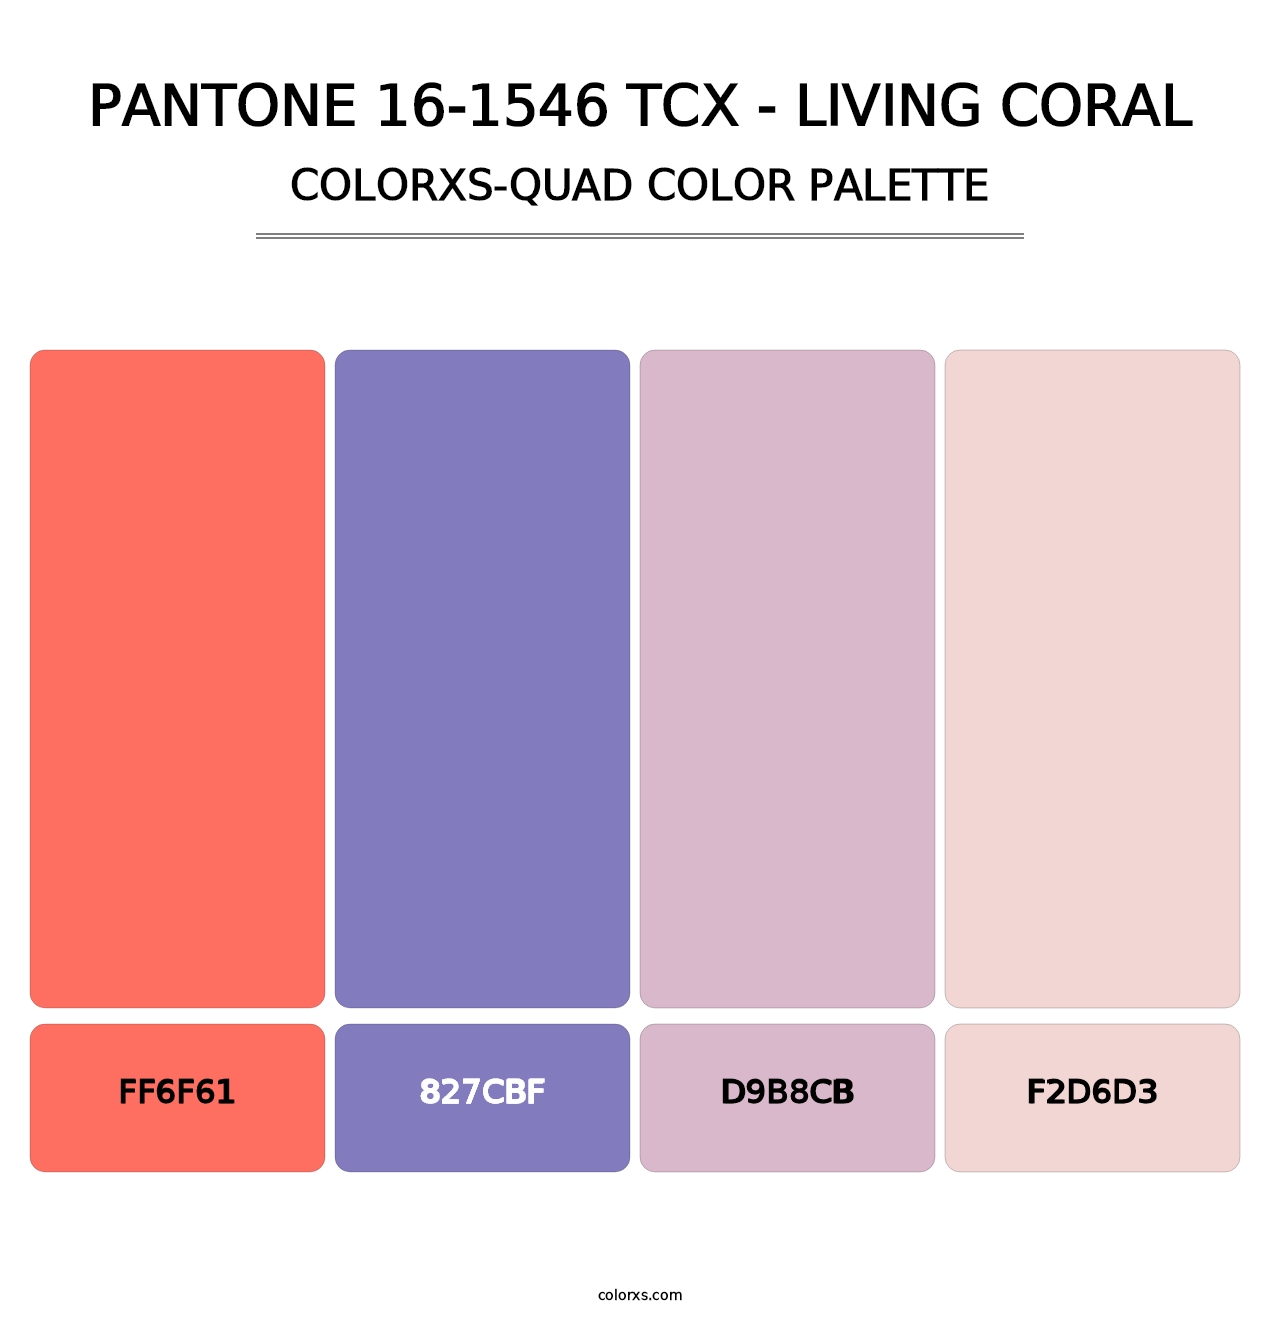 PANTONE 16-1546 TCX - Living Coral - Colorxs Quad Palette